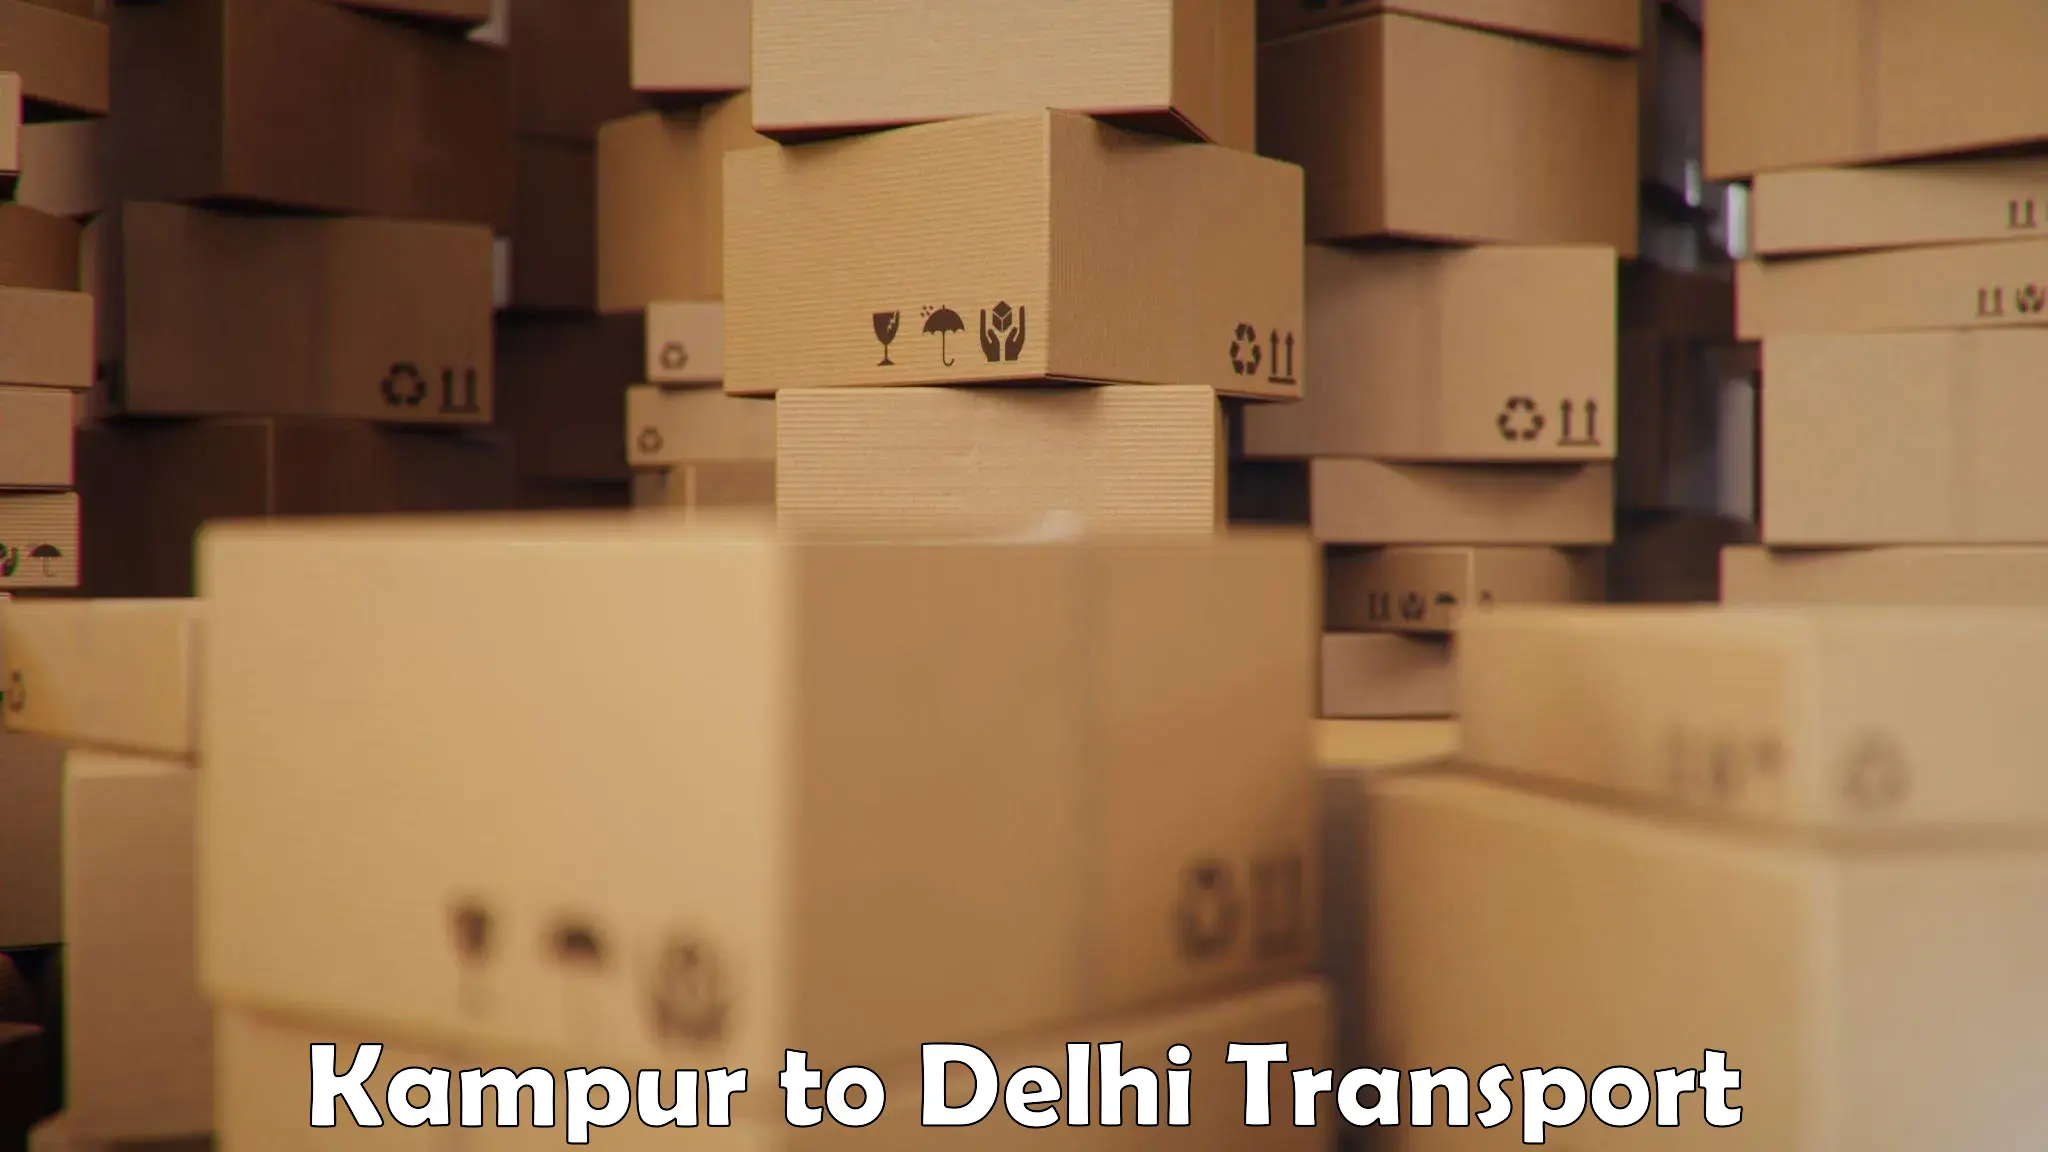 India truck logistics services Kampur to Delhi